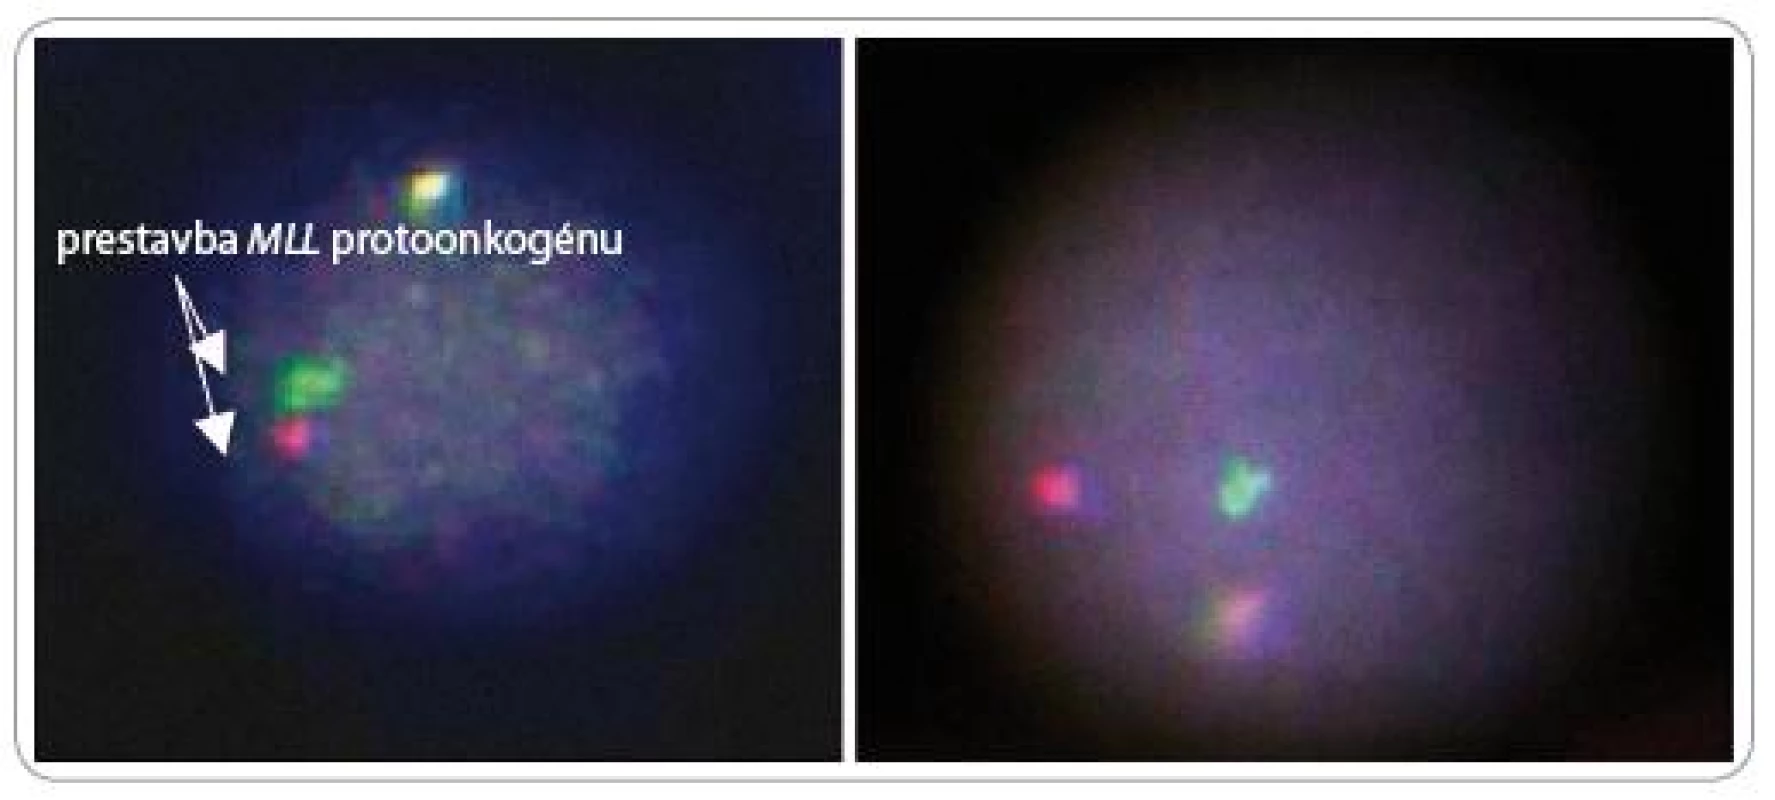 Výsledok fluorescenčnej analýzy interfázneho jadra, získaný zosnímaním CCD kamerou vo fluorescenčnom mikroskope.